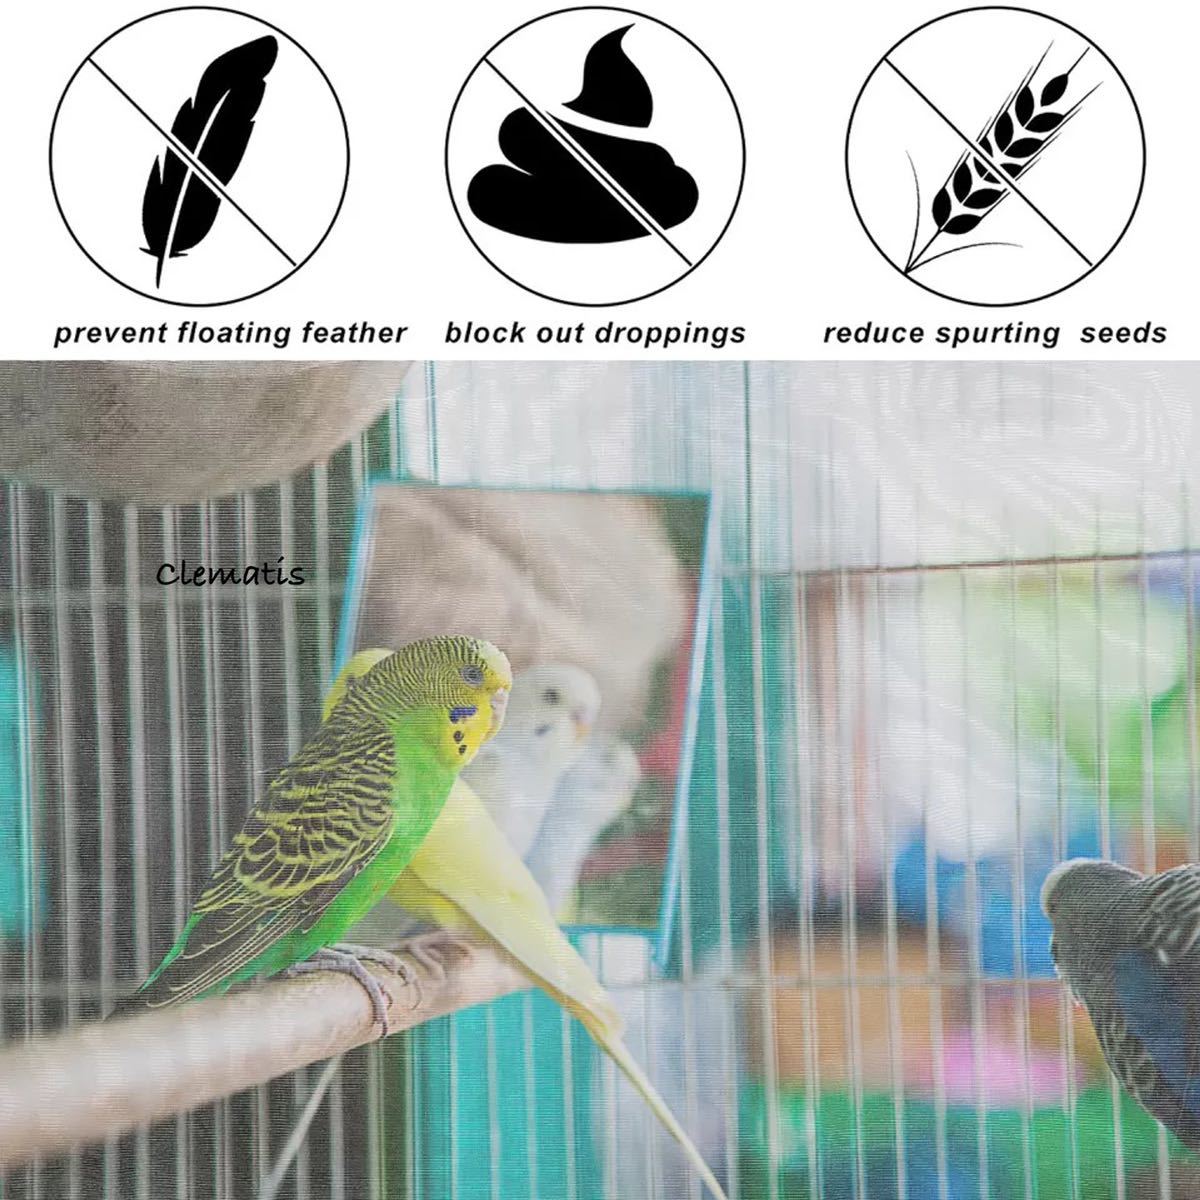 50%OFF! 鳥 小動物 餌飛び散り防止 カバーエサ飛び散り防止ネット M 鳥かごネット鳥籠用